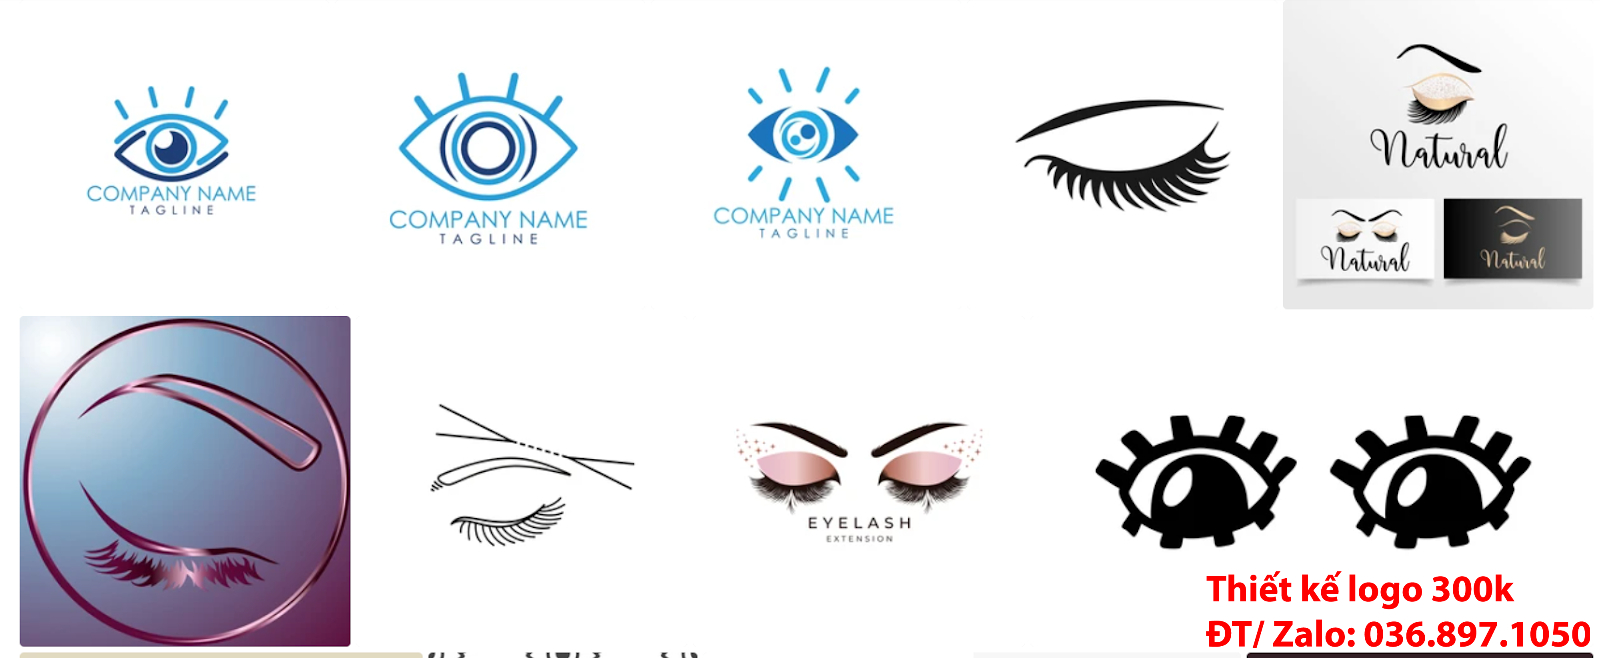 Công ty nhận làm Mẫu logo thẩm mỹ lông mi mắt đơn giản tinh tế đẹp chuyên nghiệp tại Tp Hồ Chí Minh